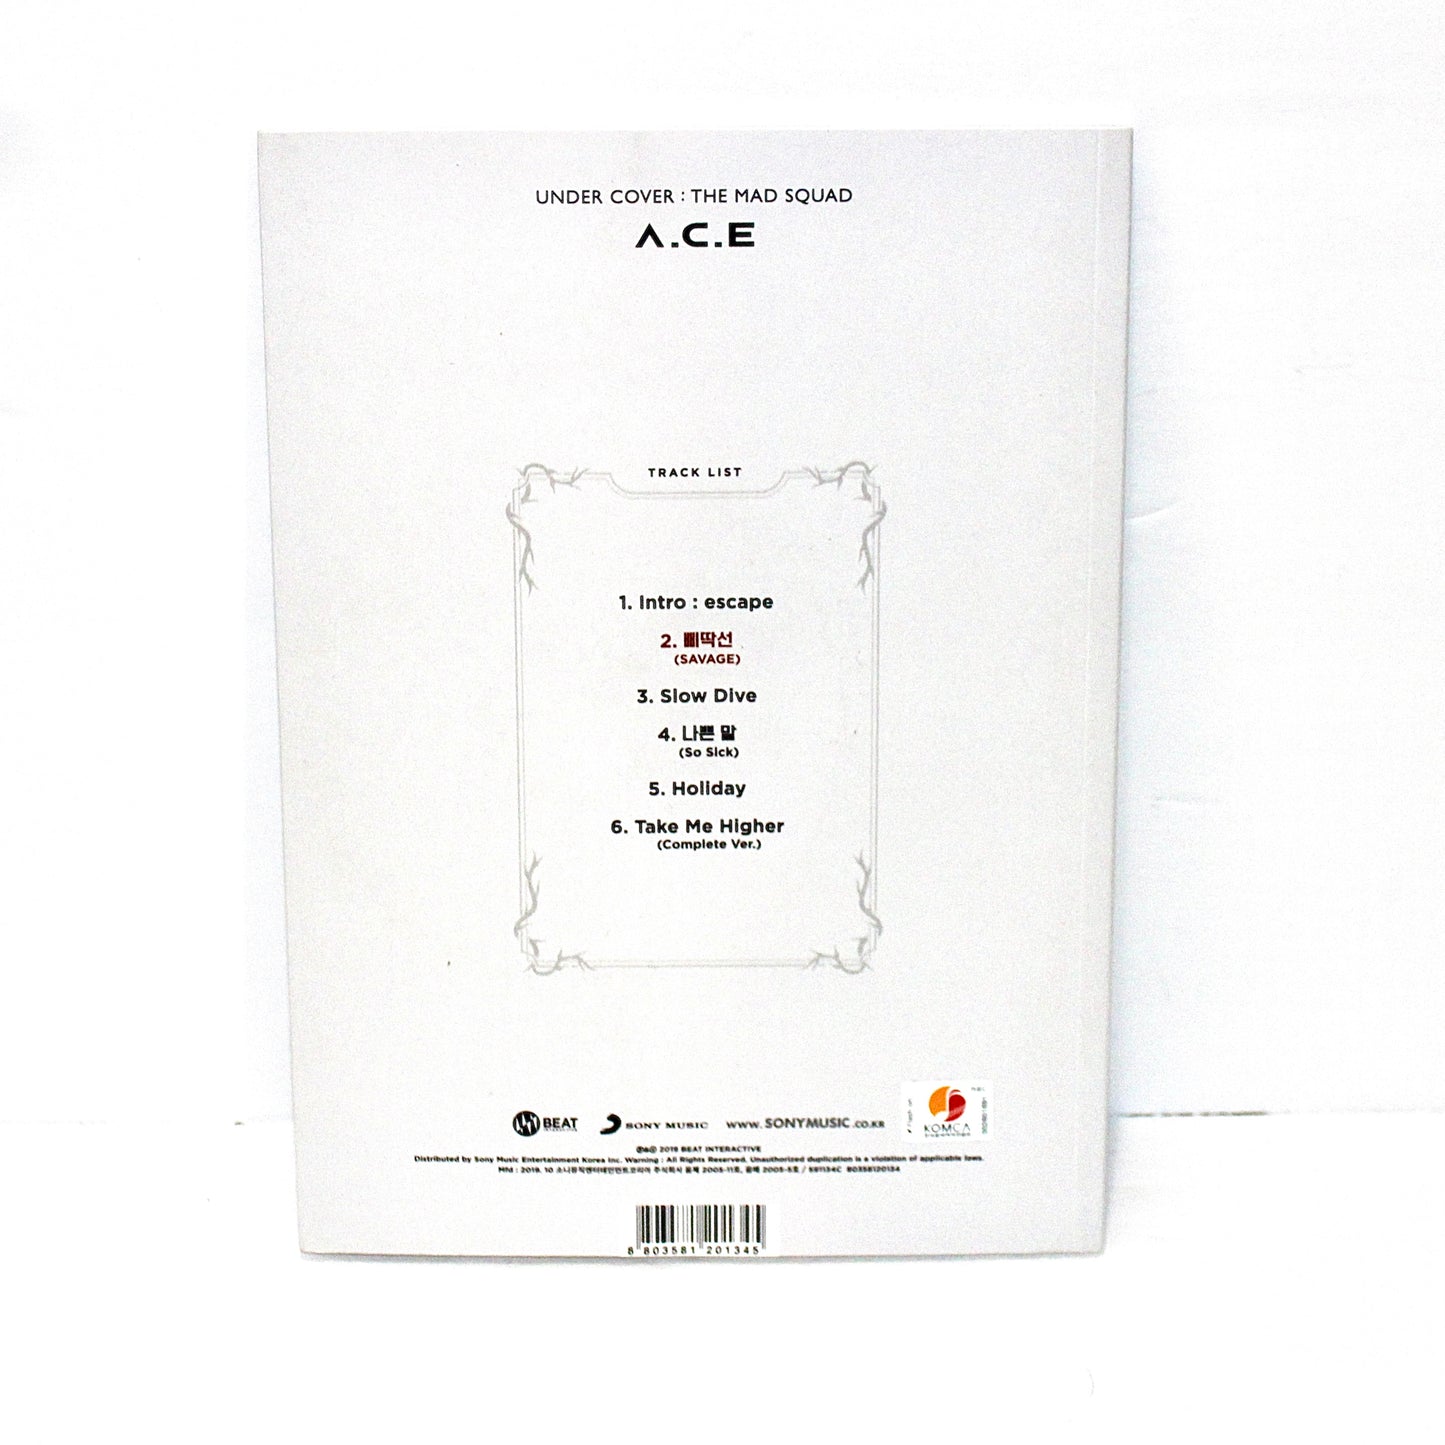 A.C.E 3rd Mini Album - Undercover: The Mad Squad